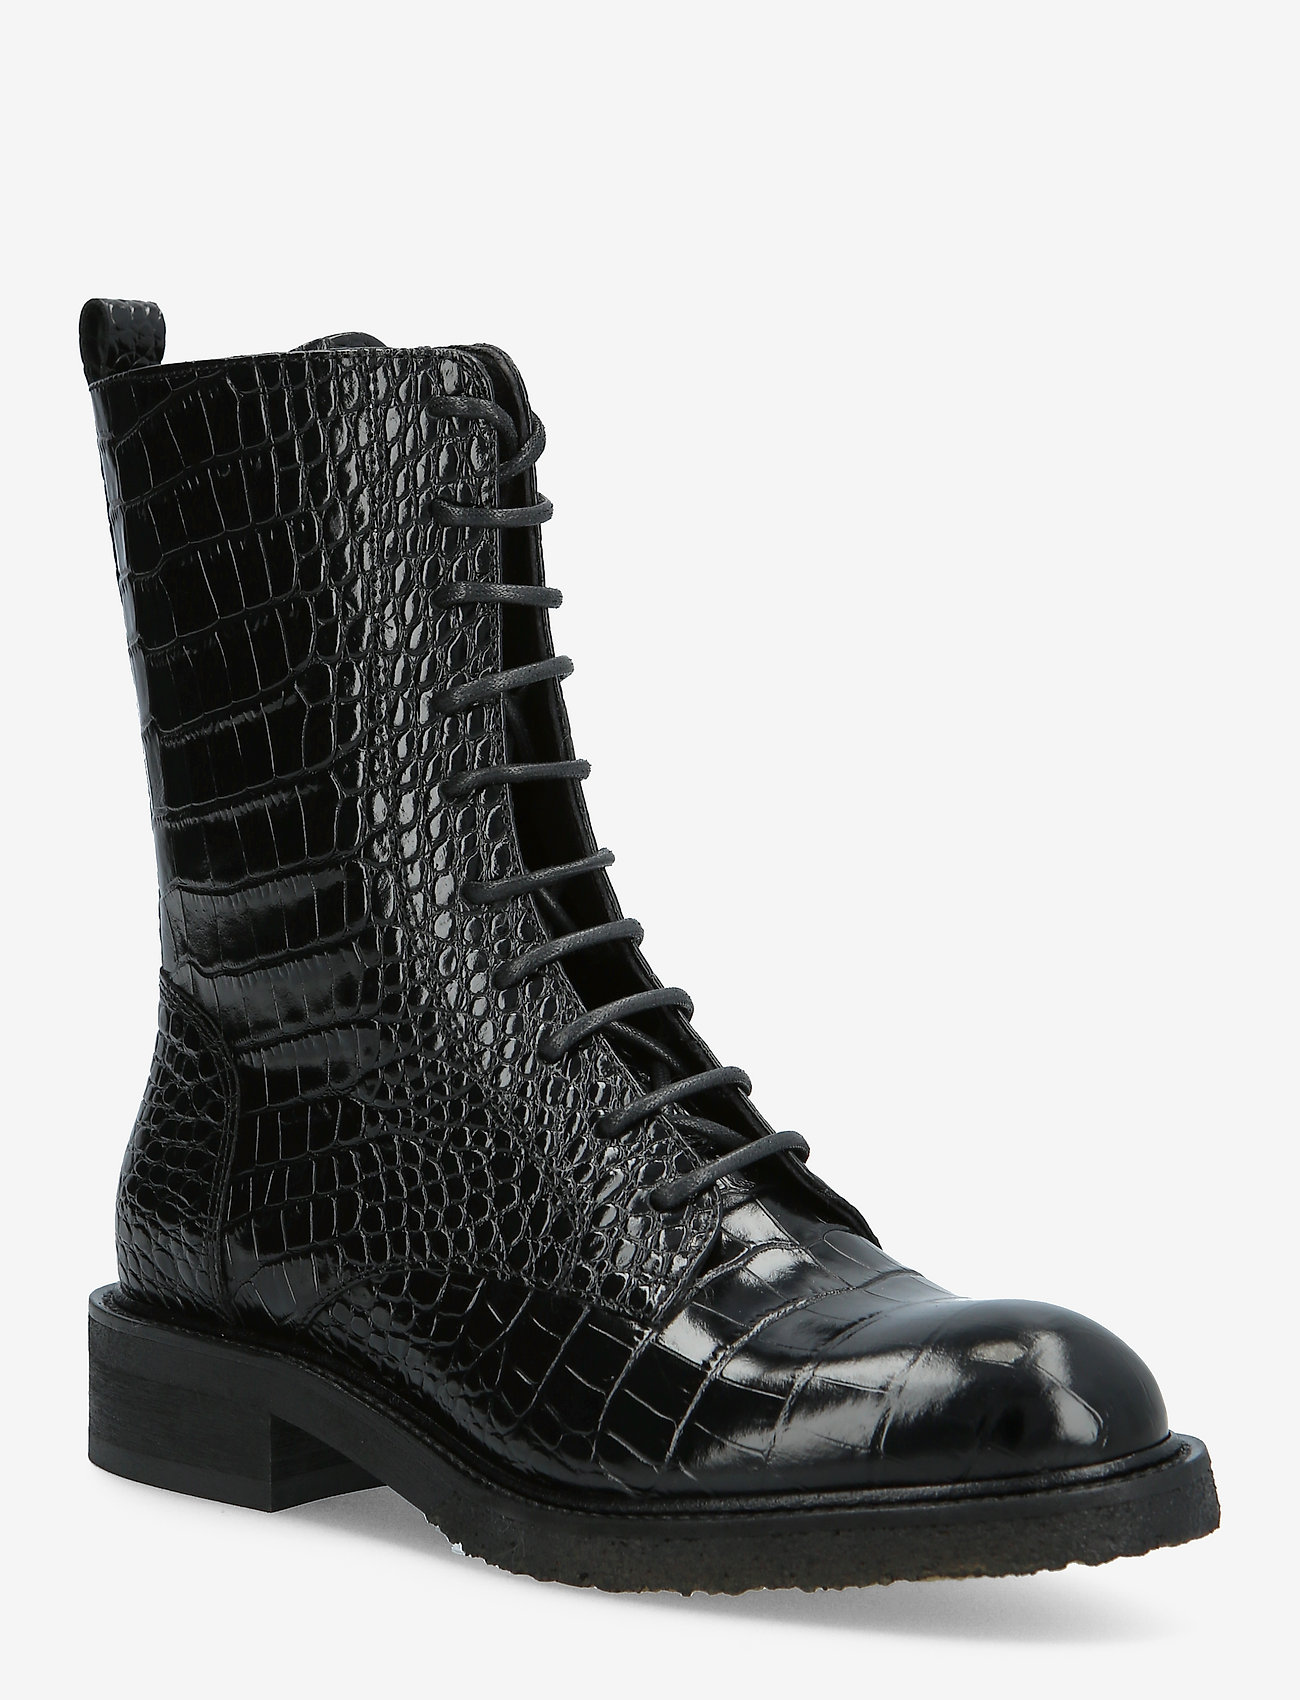 Billi Bi Boots - ankle boots | Boozt.com